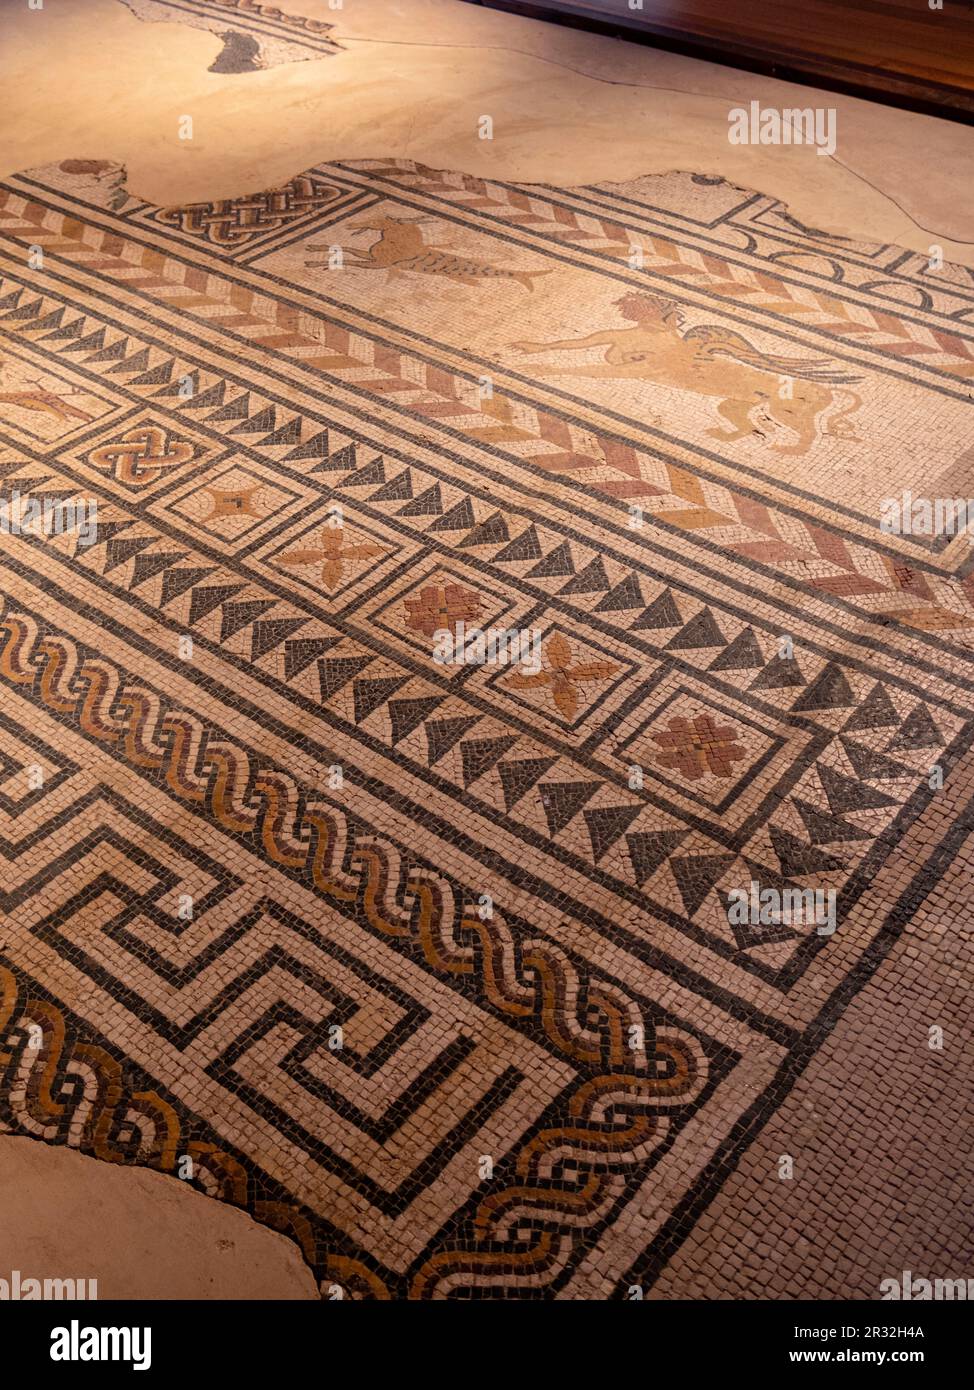 mosaicos romanos, Medinaceli, Soria, comunidad autónoma de Castilla y León, Spain, Europe. Stock Photo